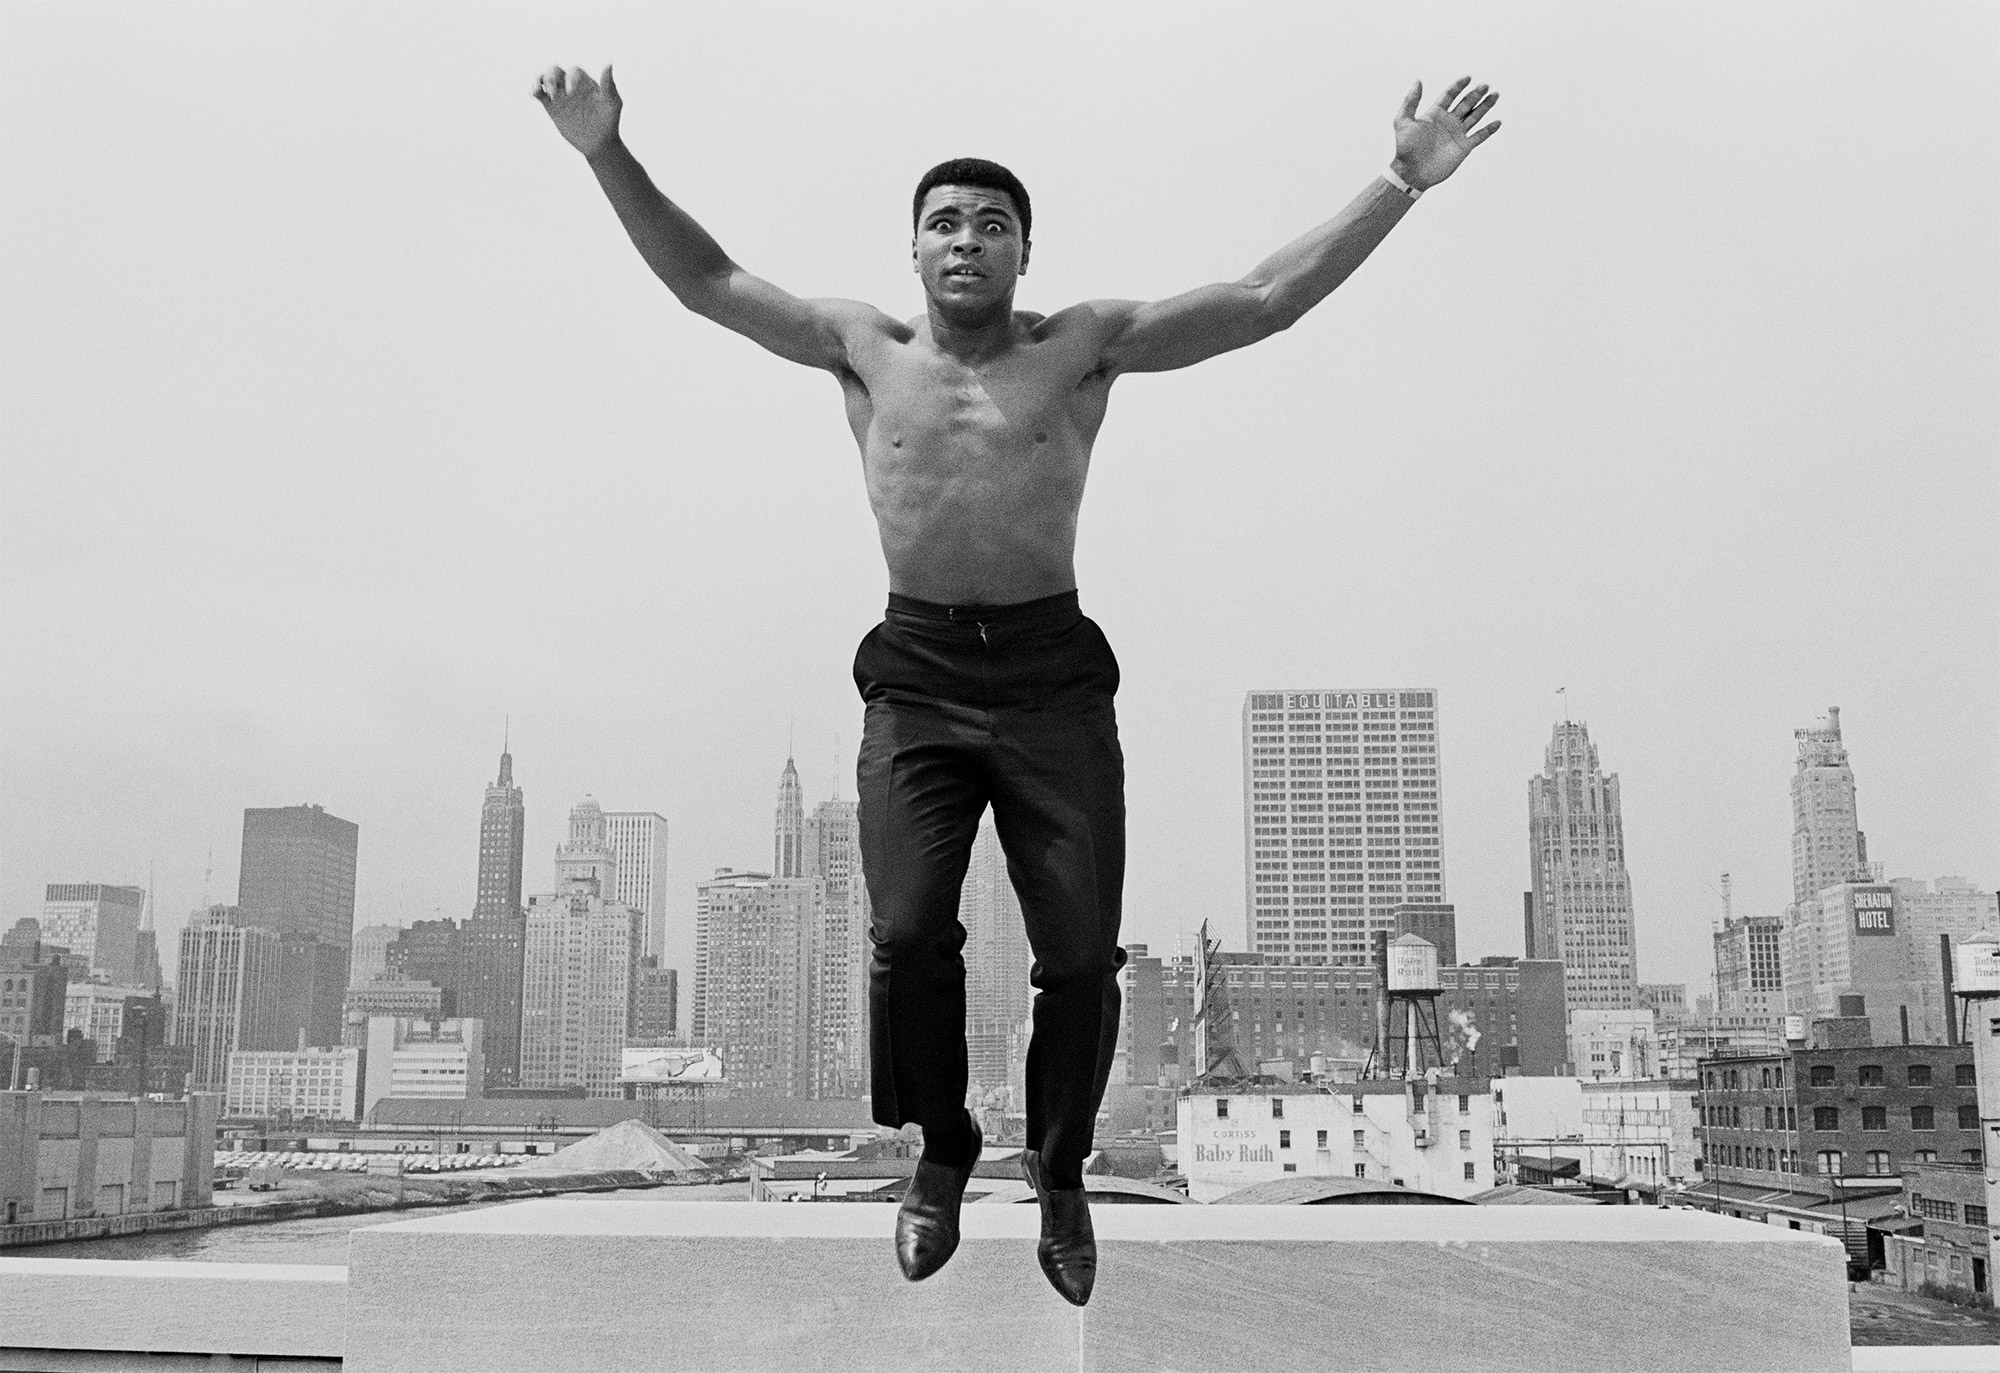 Thomas Hoepker, Muhammad Ali Jumping, Chicago, Illinois, 1966